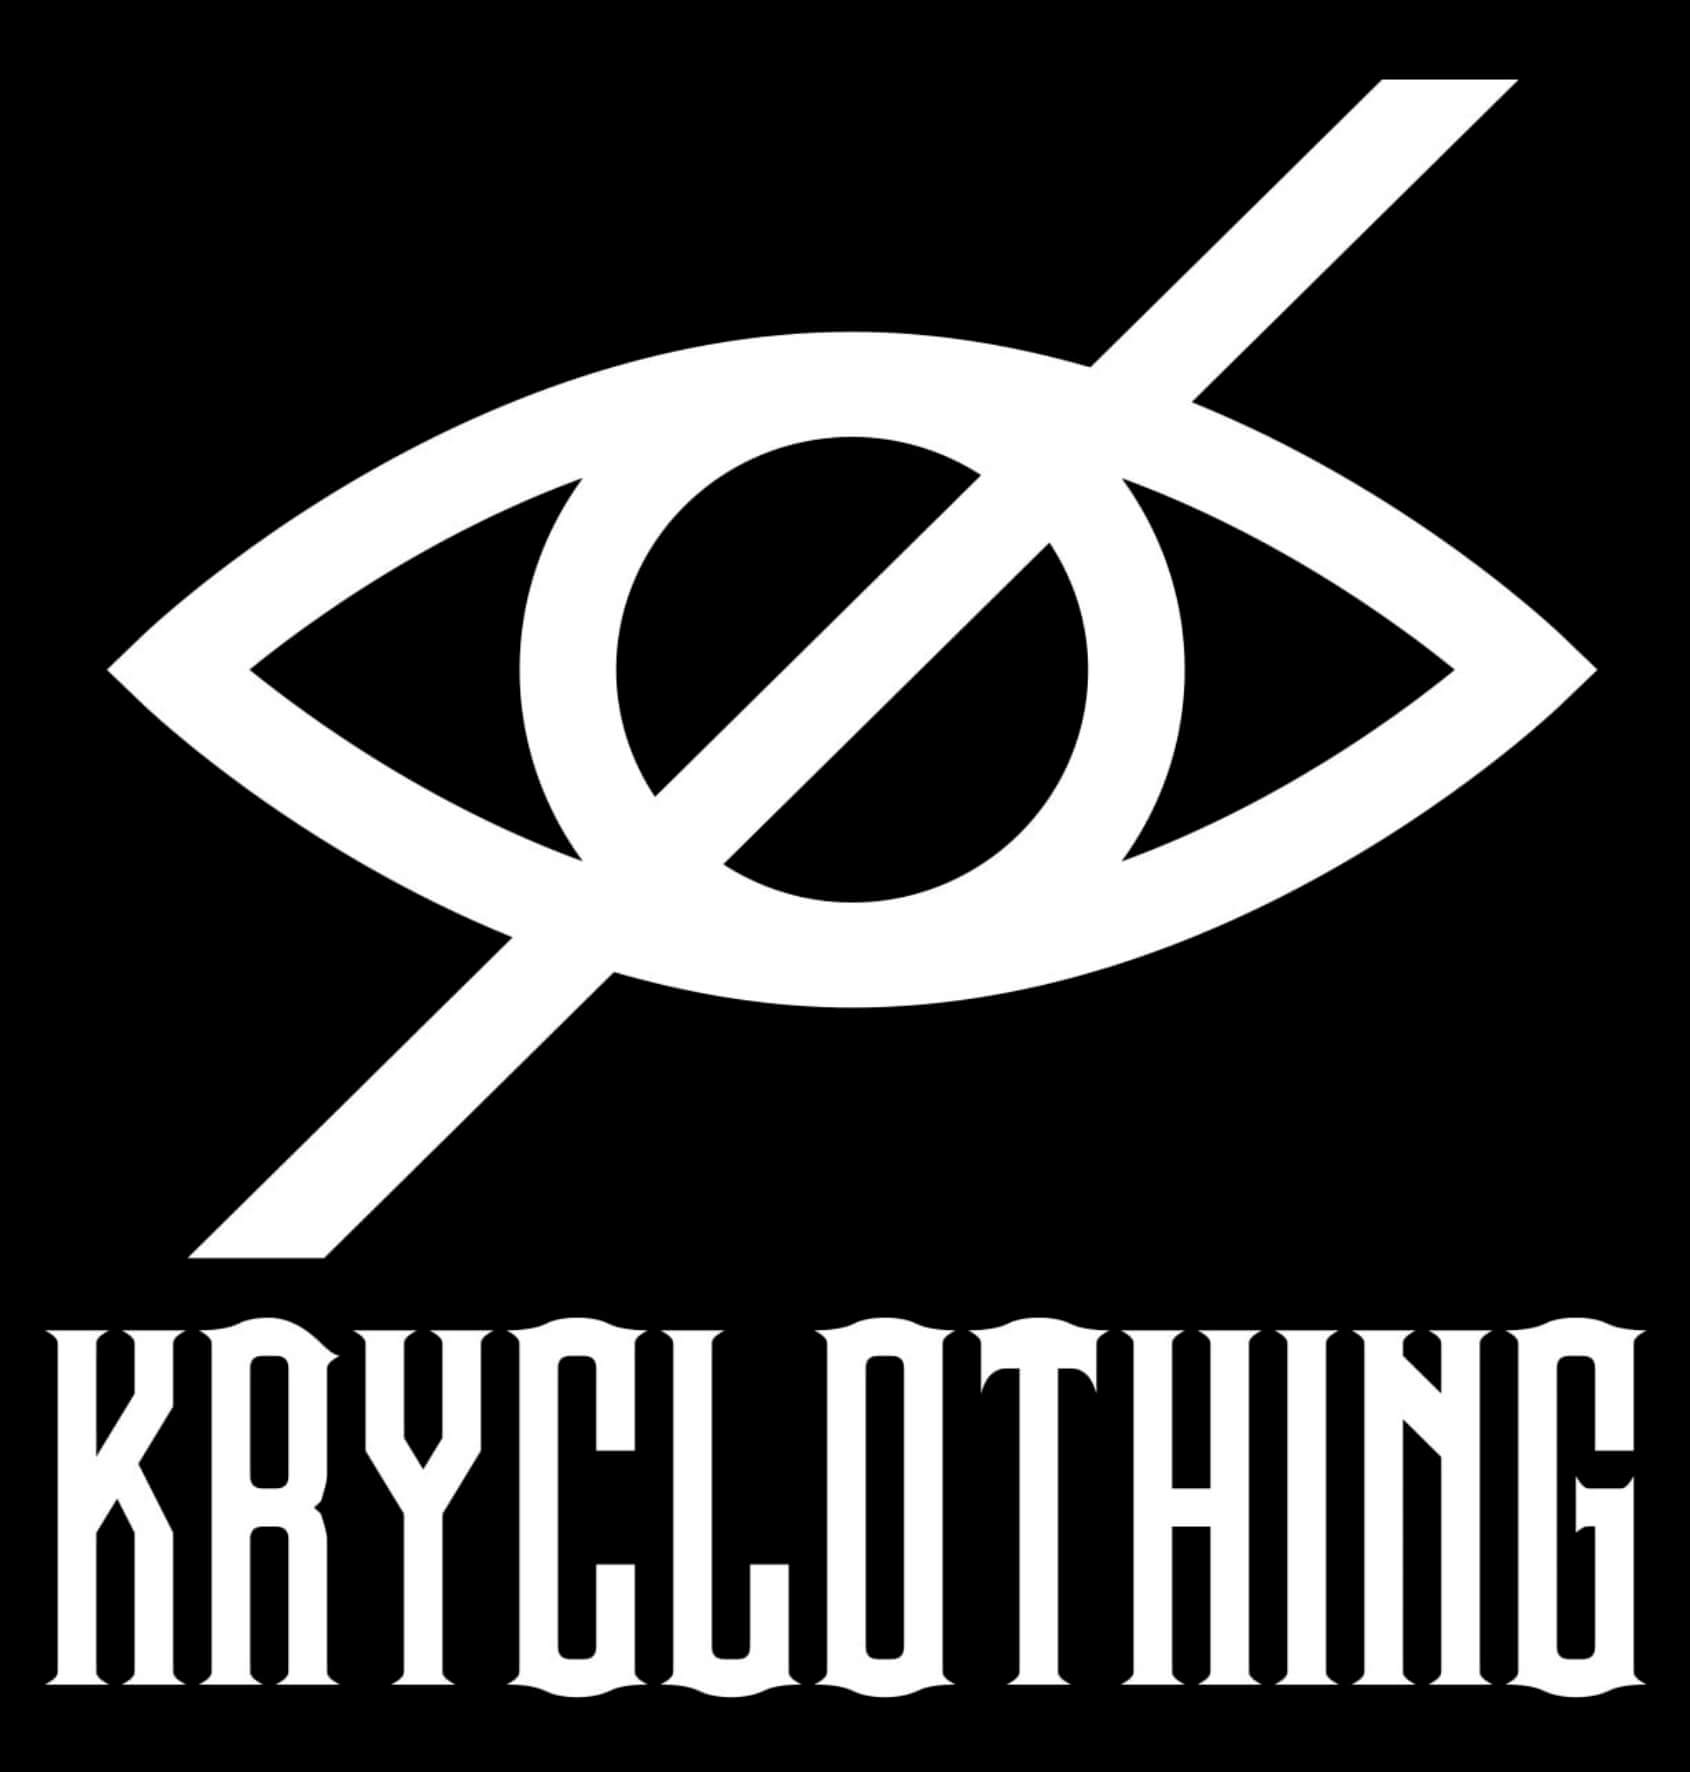 ケリークロージング（kry ）と似たブランド、代わりになるもの、代用品のおすすめまとめ！